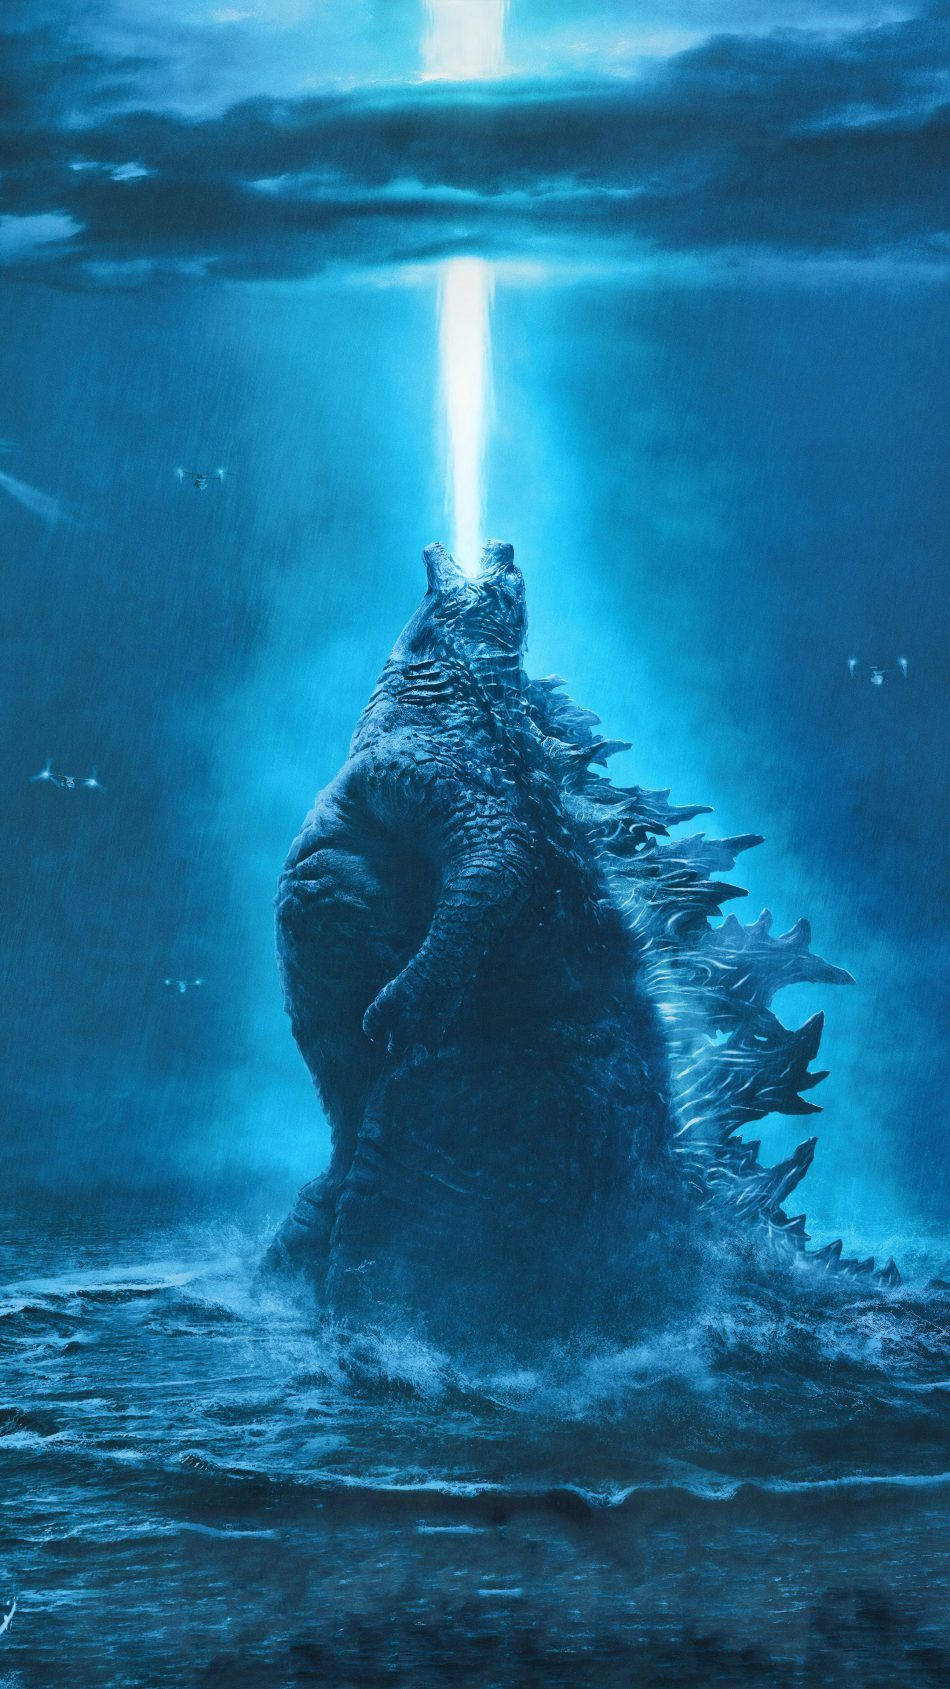 "The King Of Monsters Returns" Wallpaper